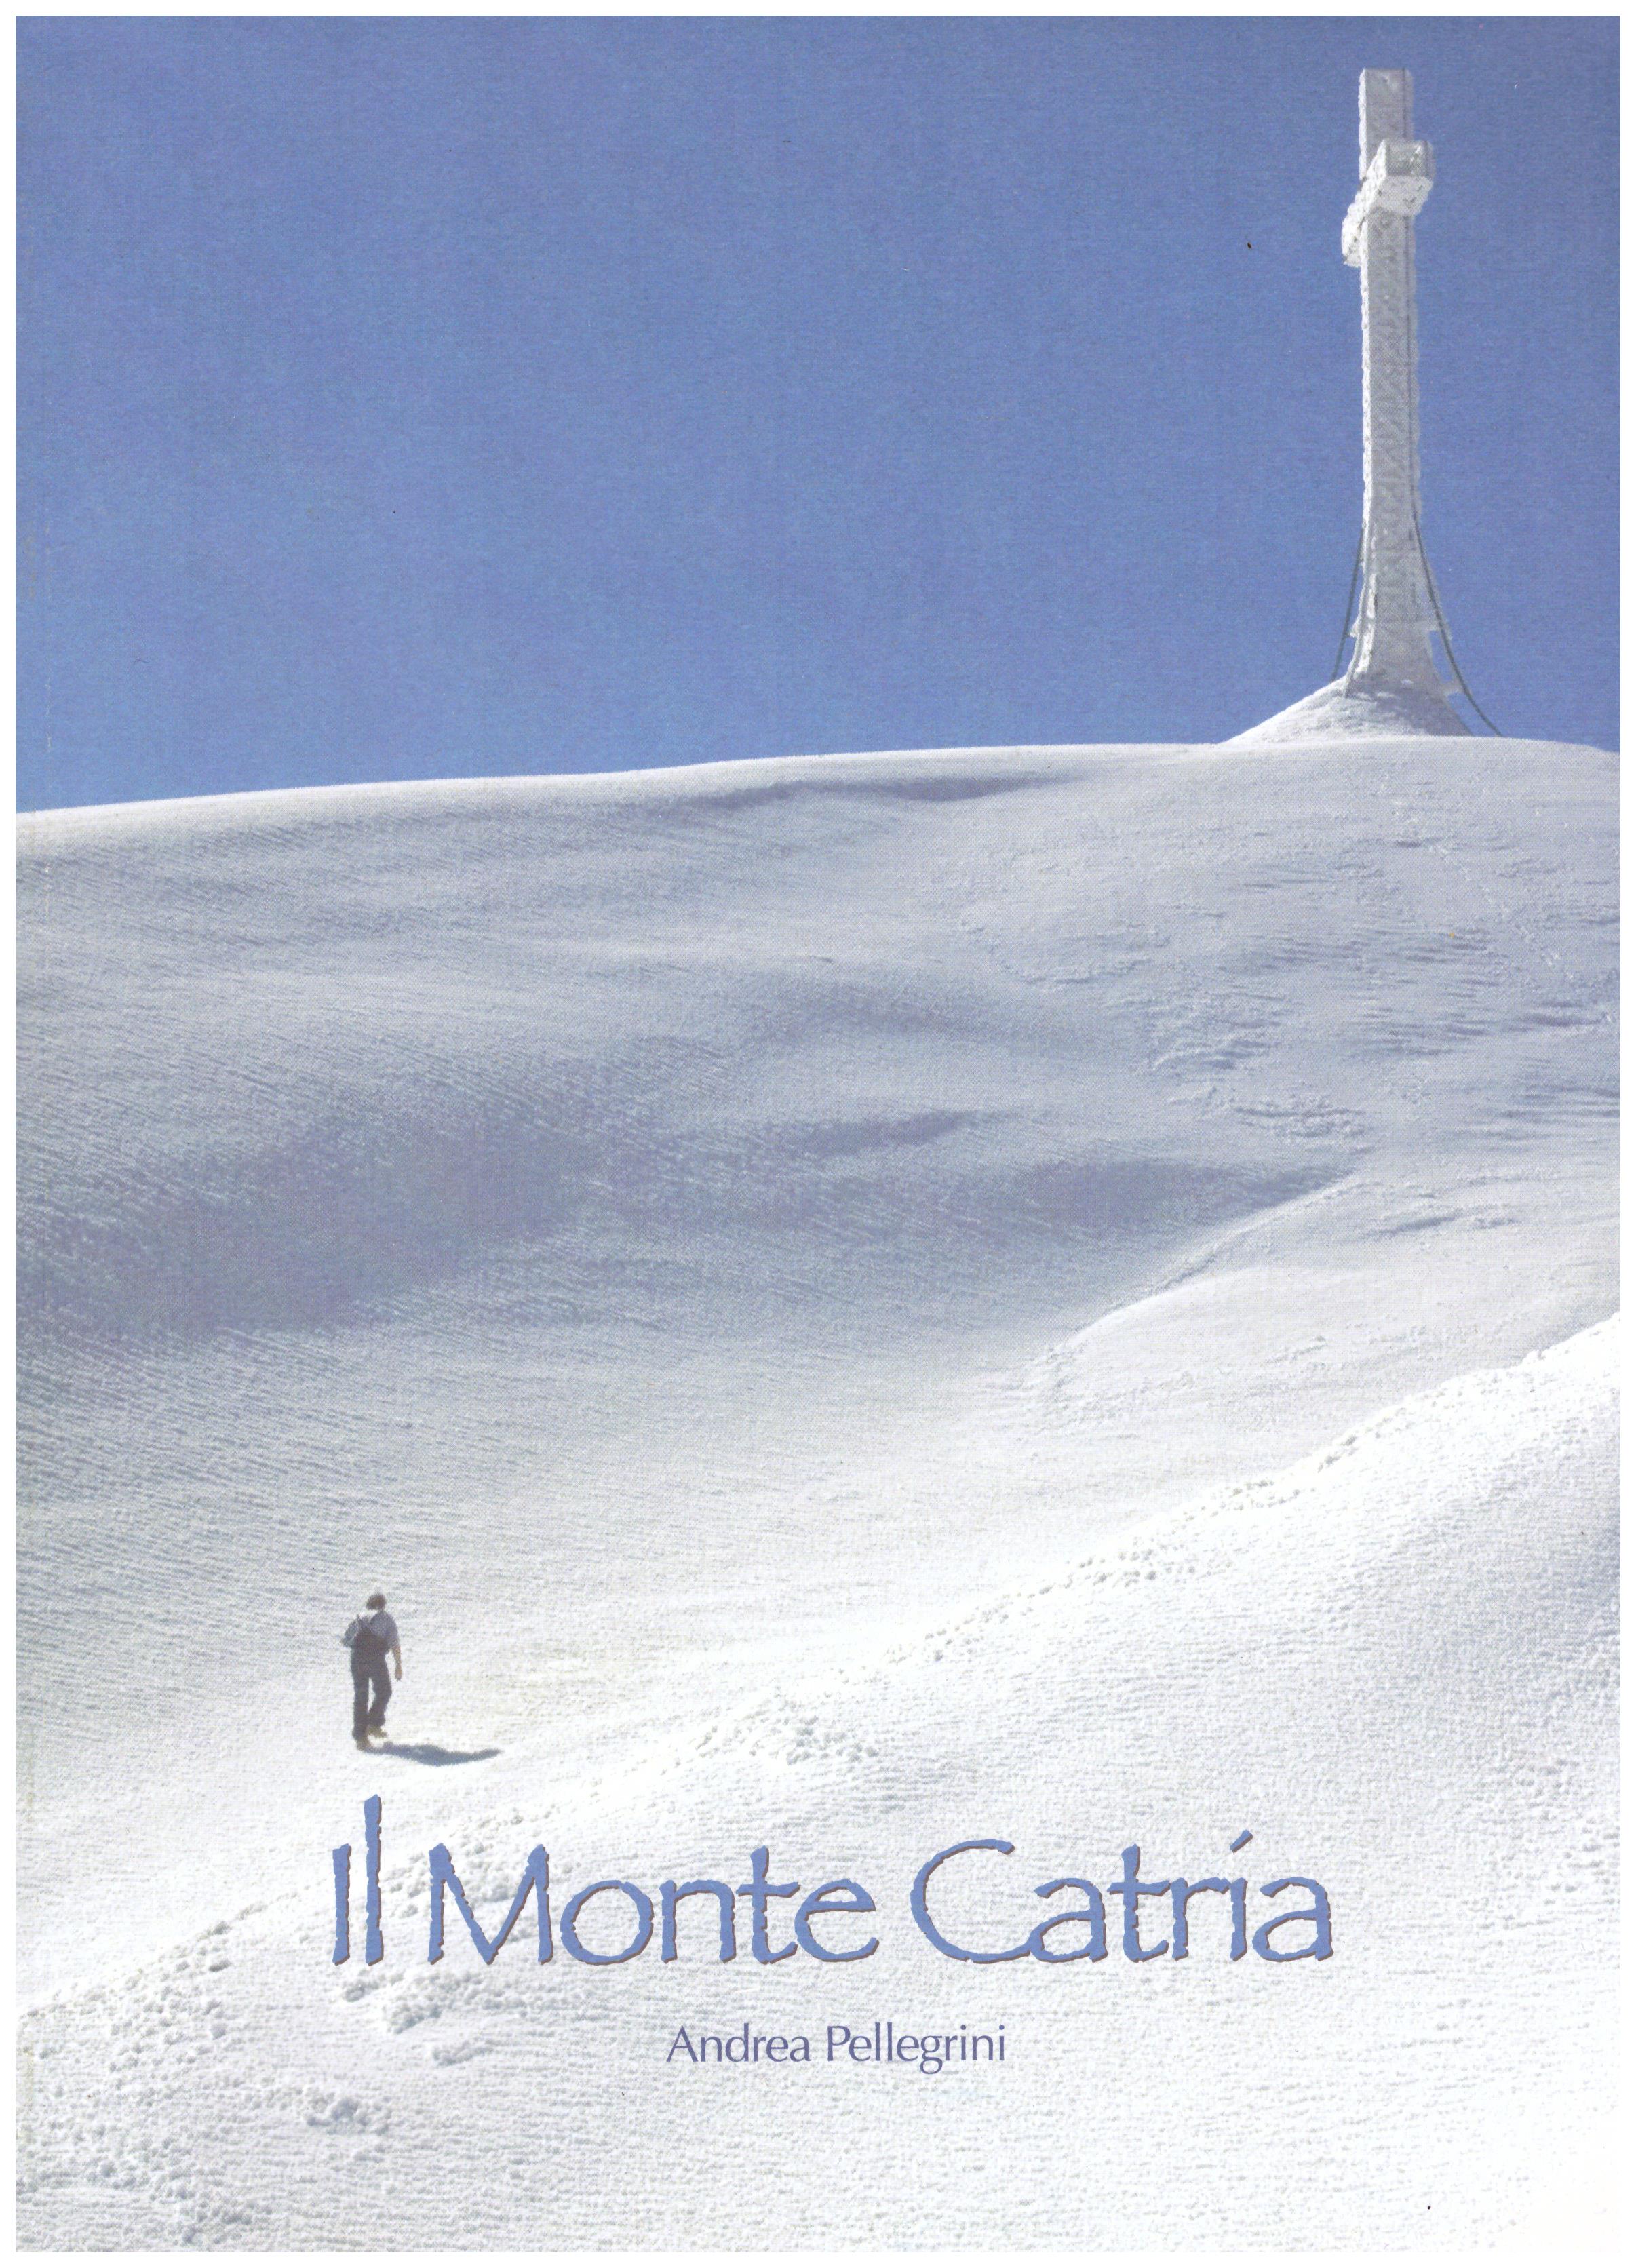 Titolo: Il monte Catria  Autore: Andrea Pellegrini  Editore: GHAPHO 5 Fano 2012